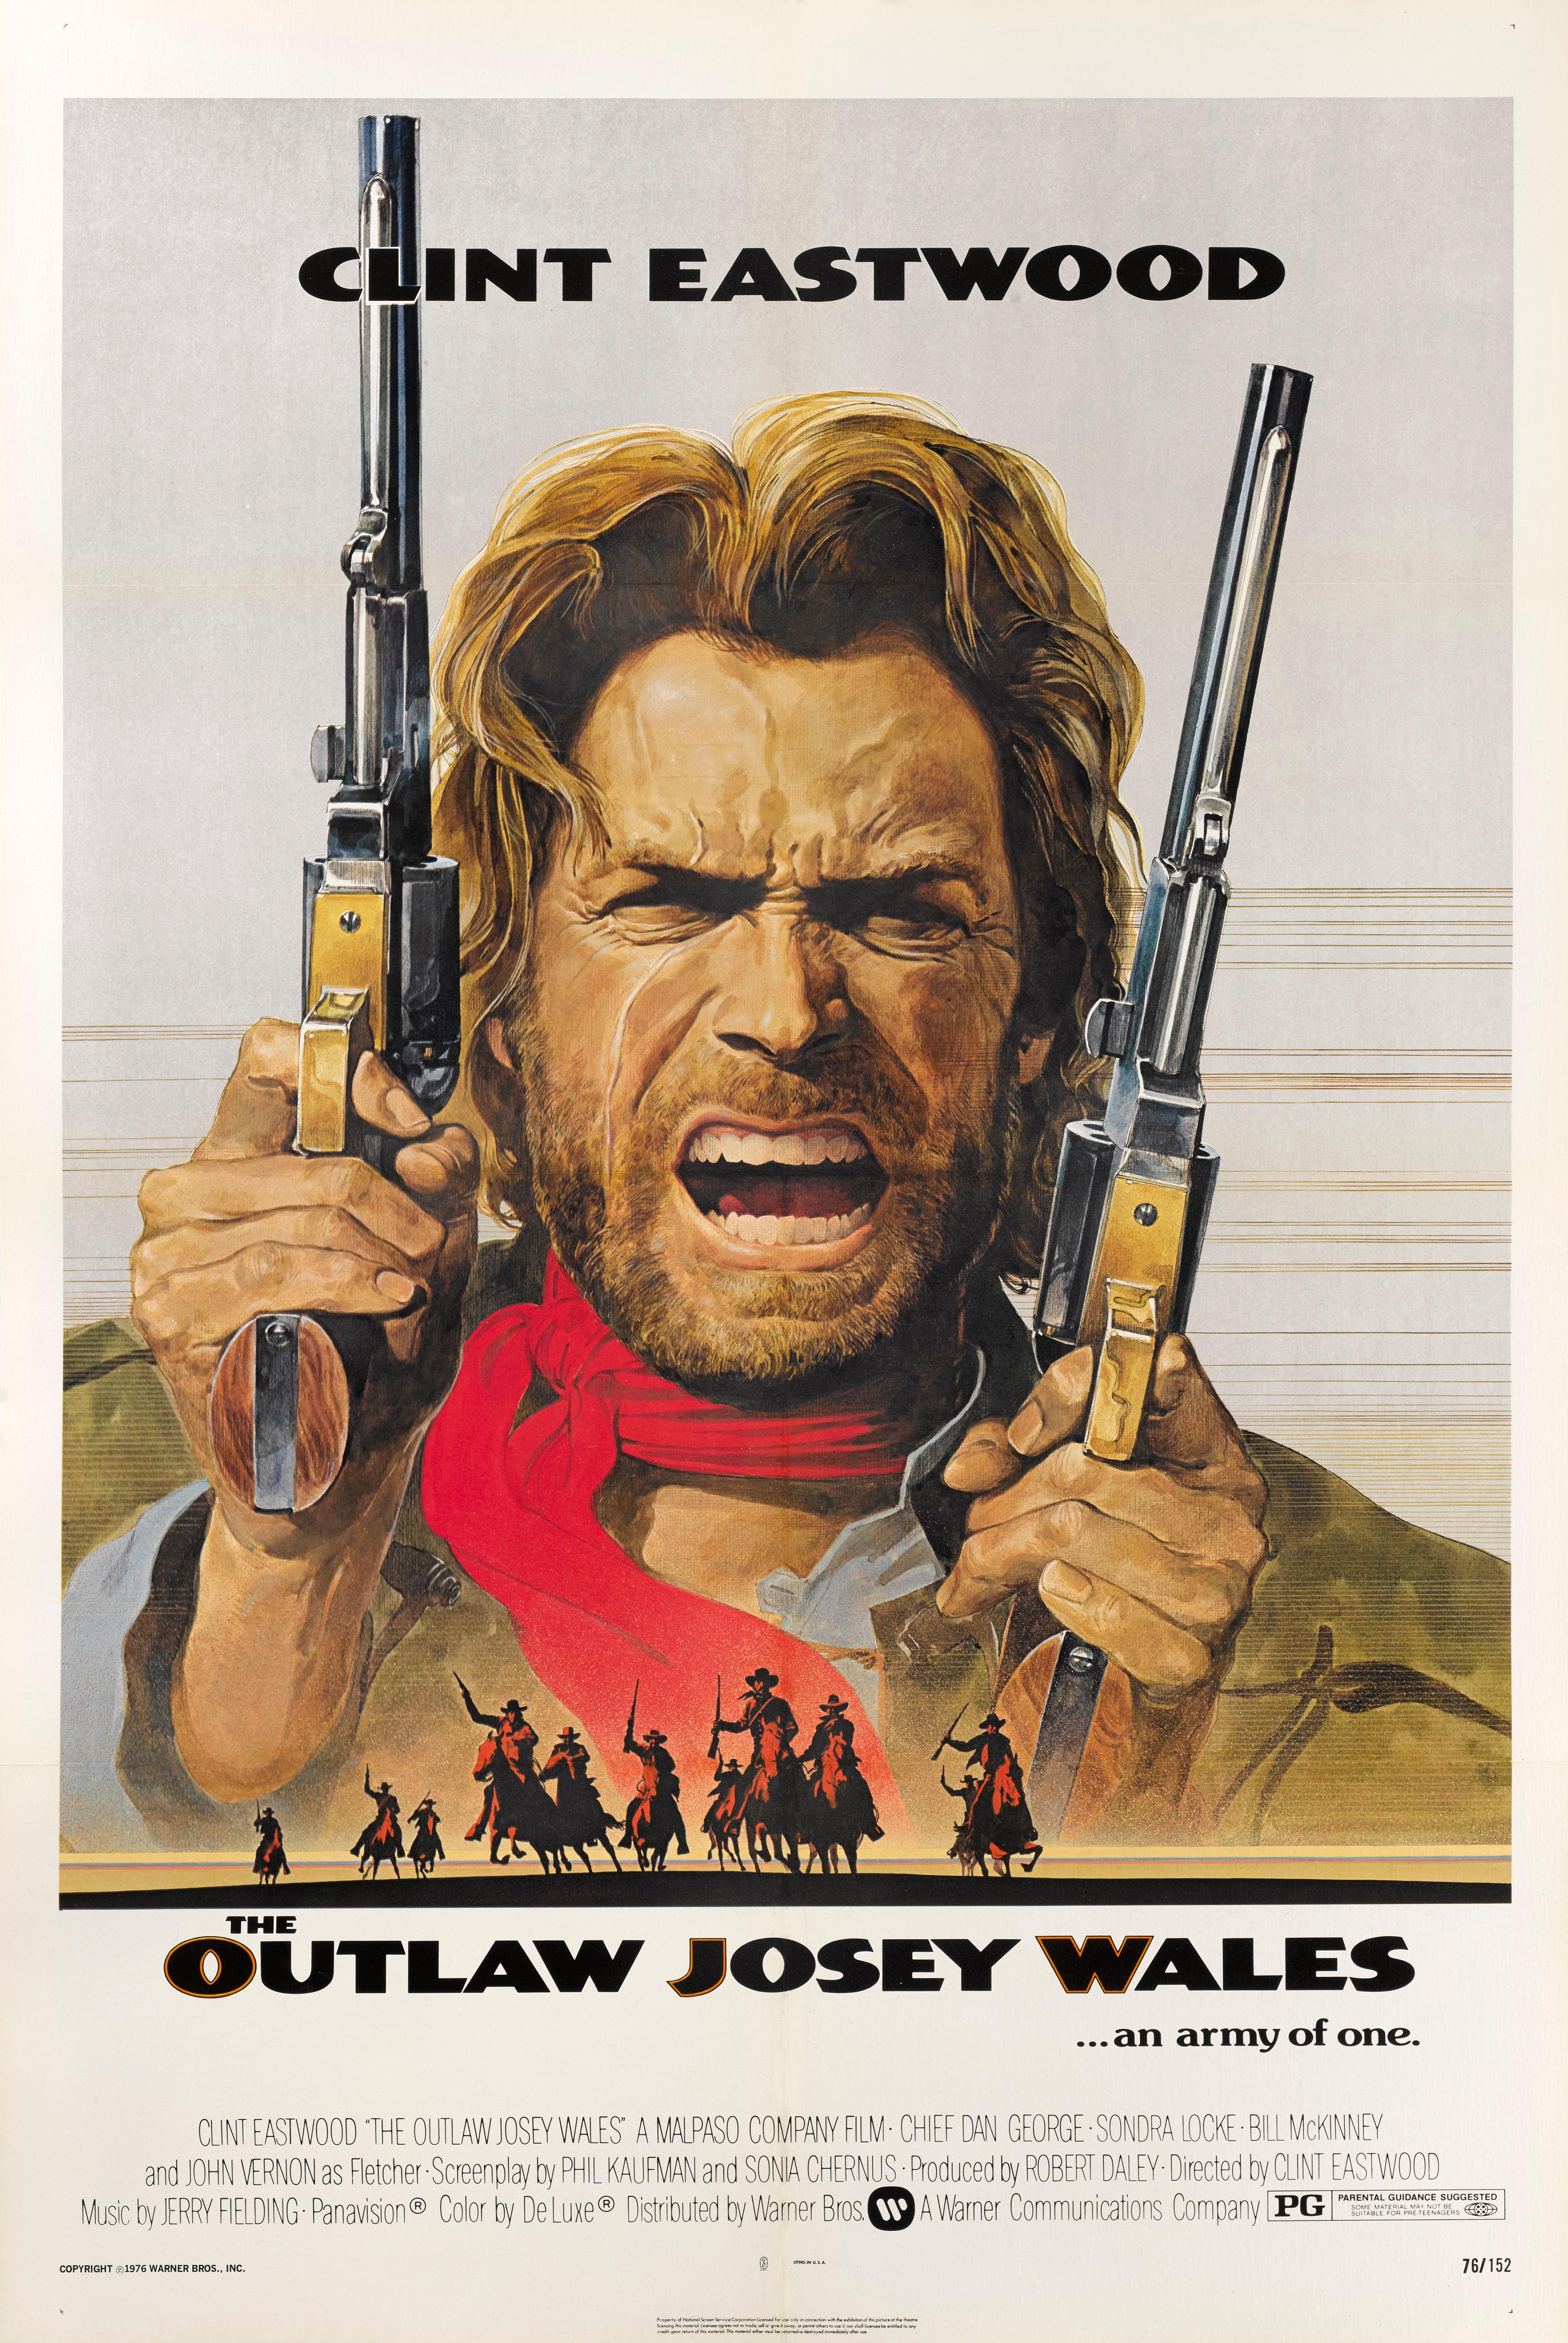 Original US-Filmplakat für den Western The Outlaw Josey Wales von 1976.
Unter der Regie und mit Clint Eastwood in der Hauptrolle ist dieser Western, der während und nach dem amerikanischen Bürgerkrieg spielt, einer der größten des Genres.
Dieses